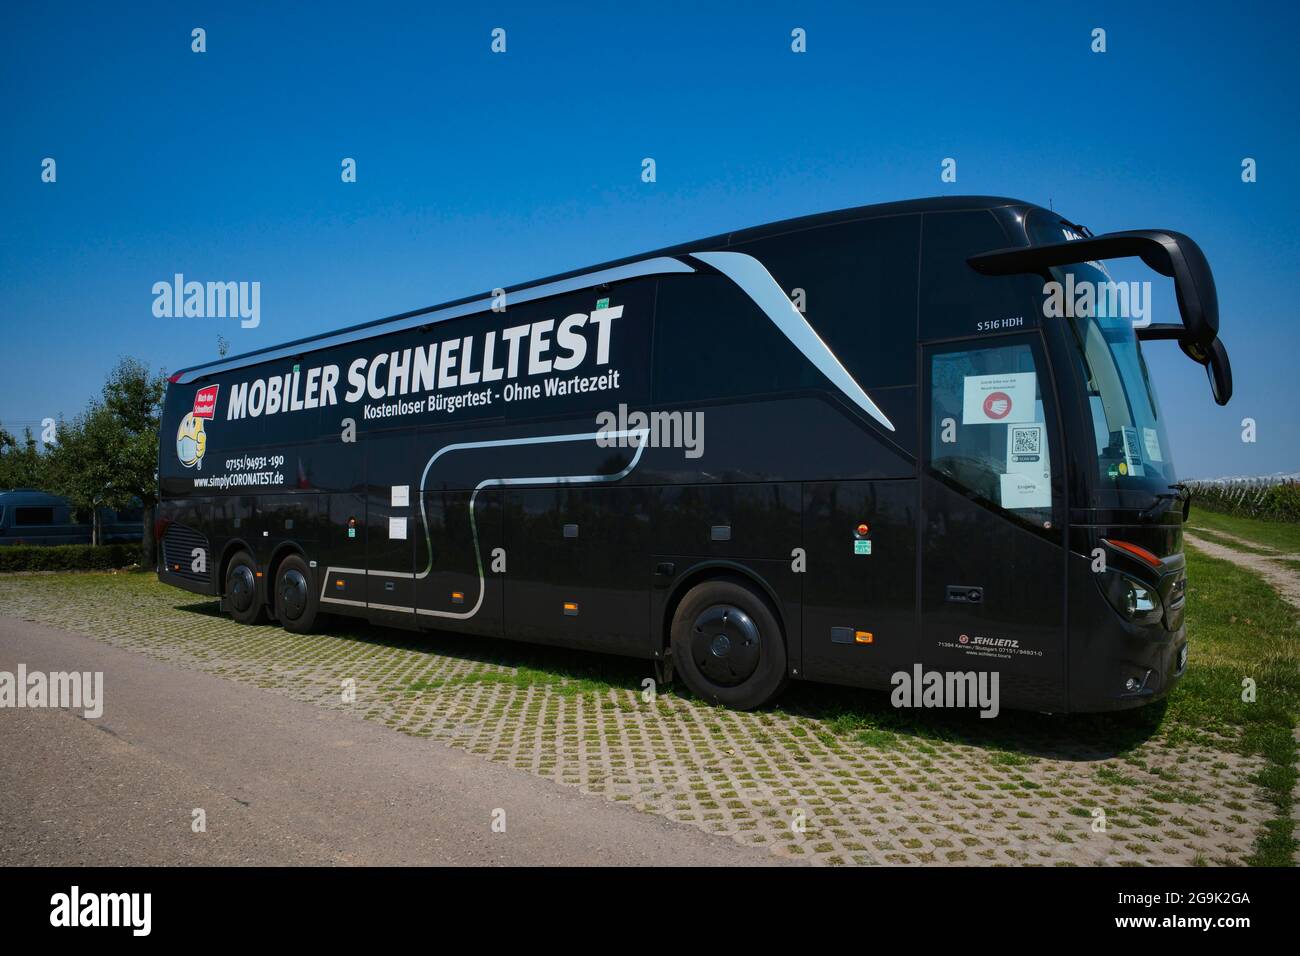 Mobiles Schnelltestzentrum im Reisebus, Corona-Krise, Stuttgart, Baden-Württemberg, Deutschland Stockfoto